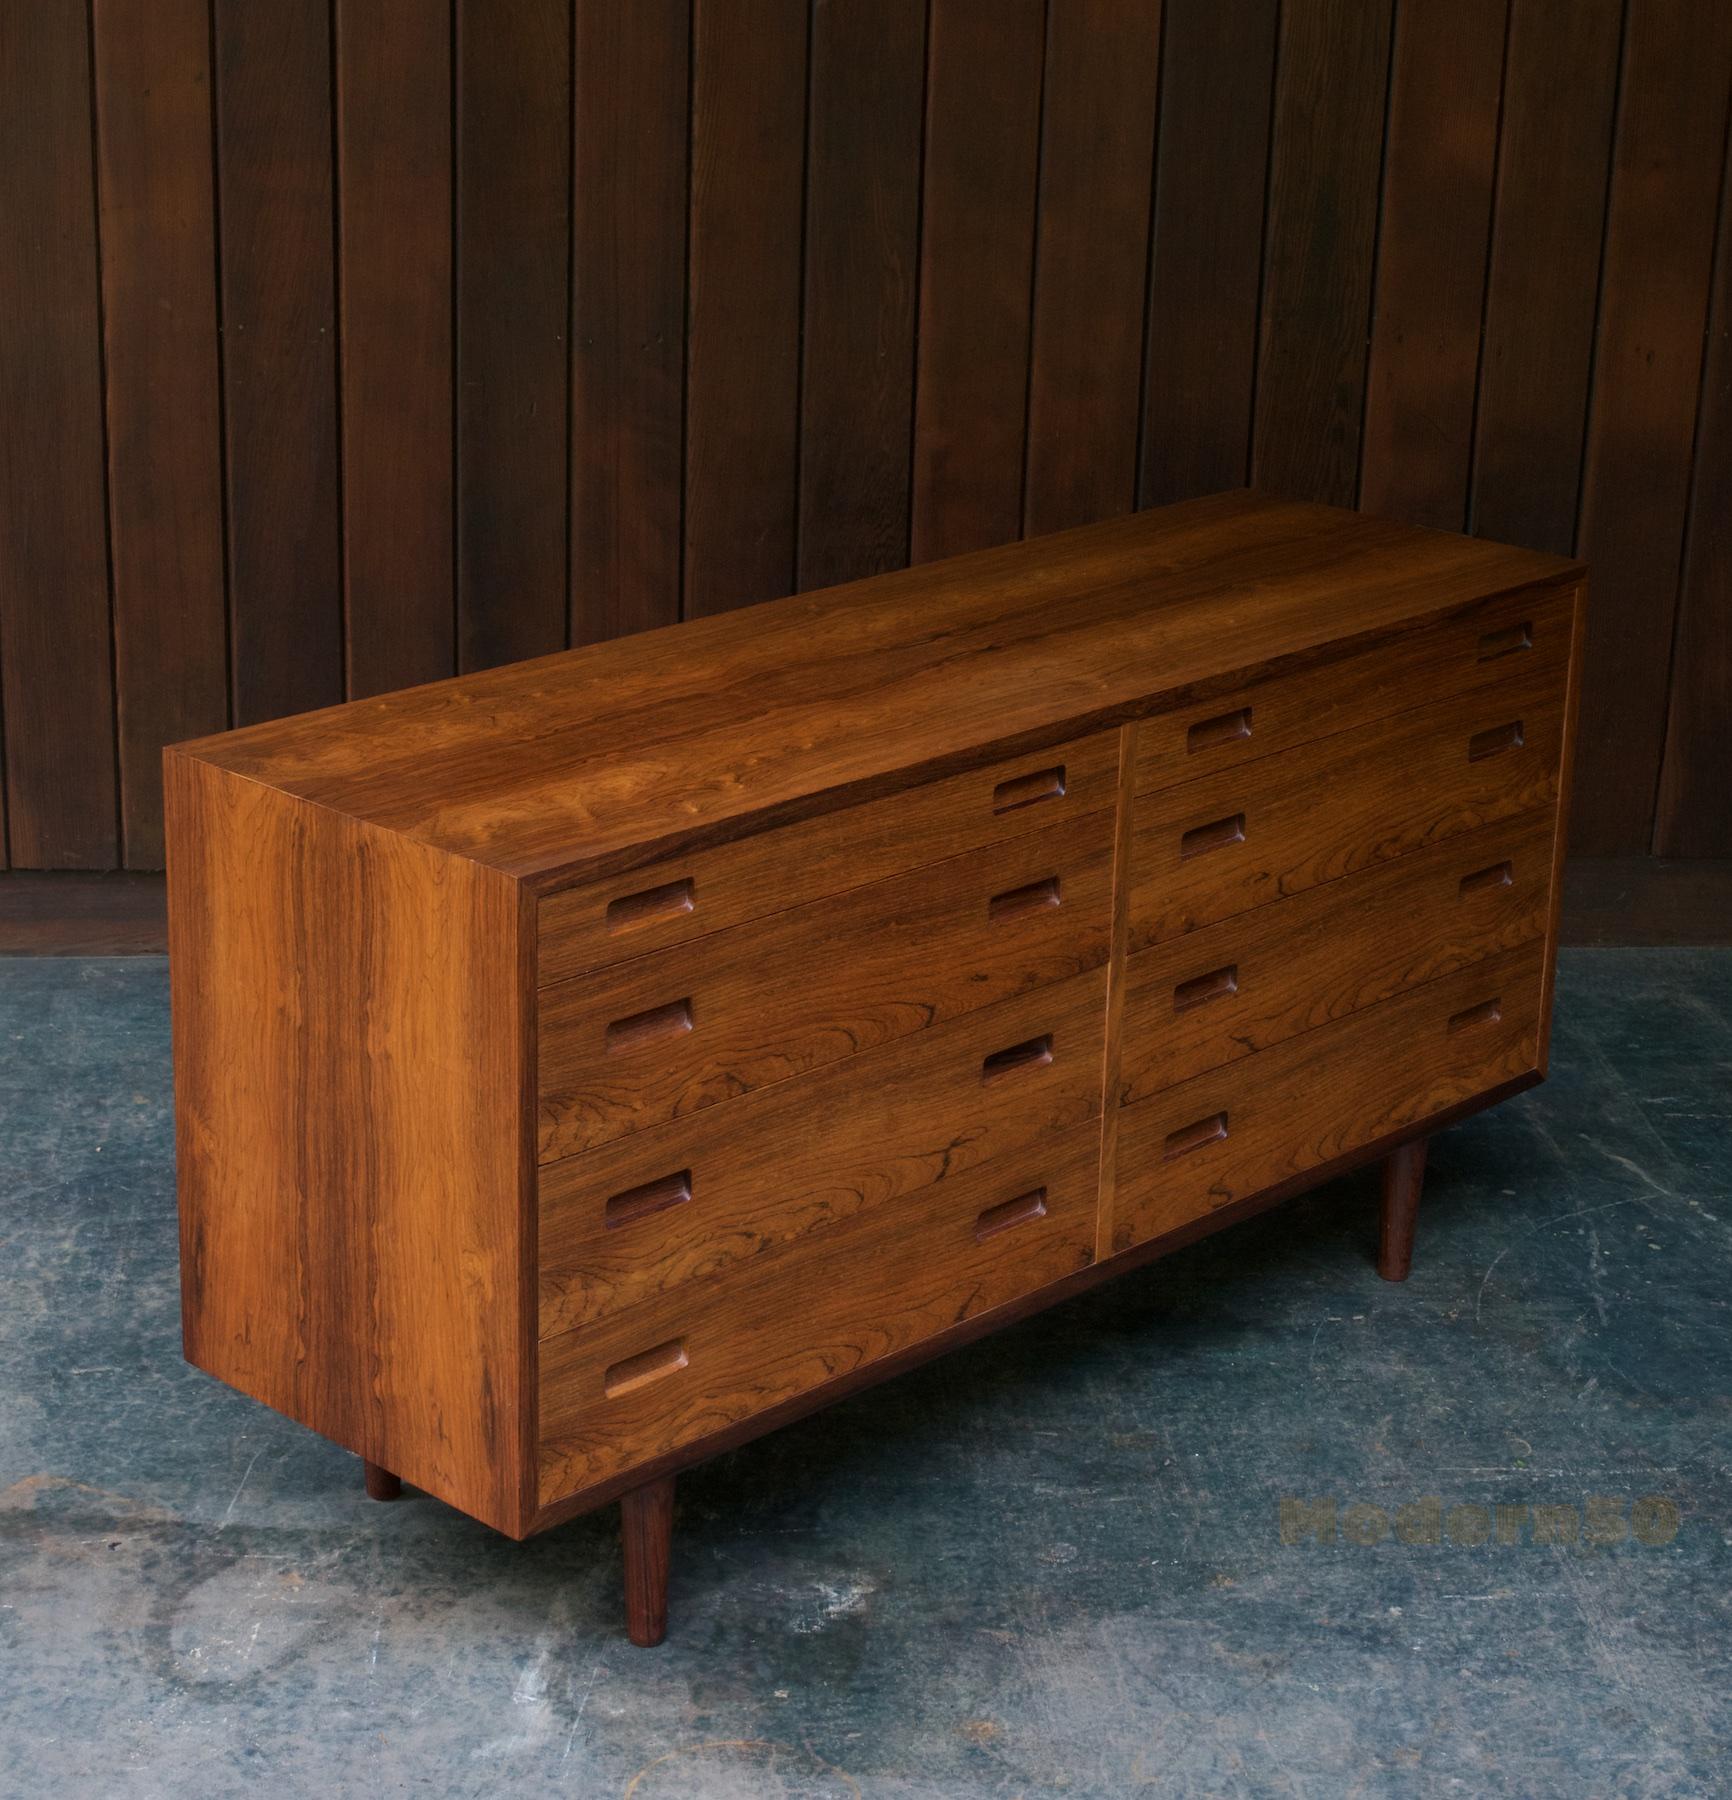 8 drawer dresser mid century